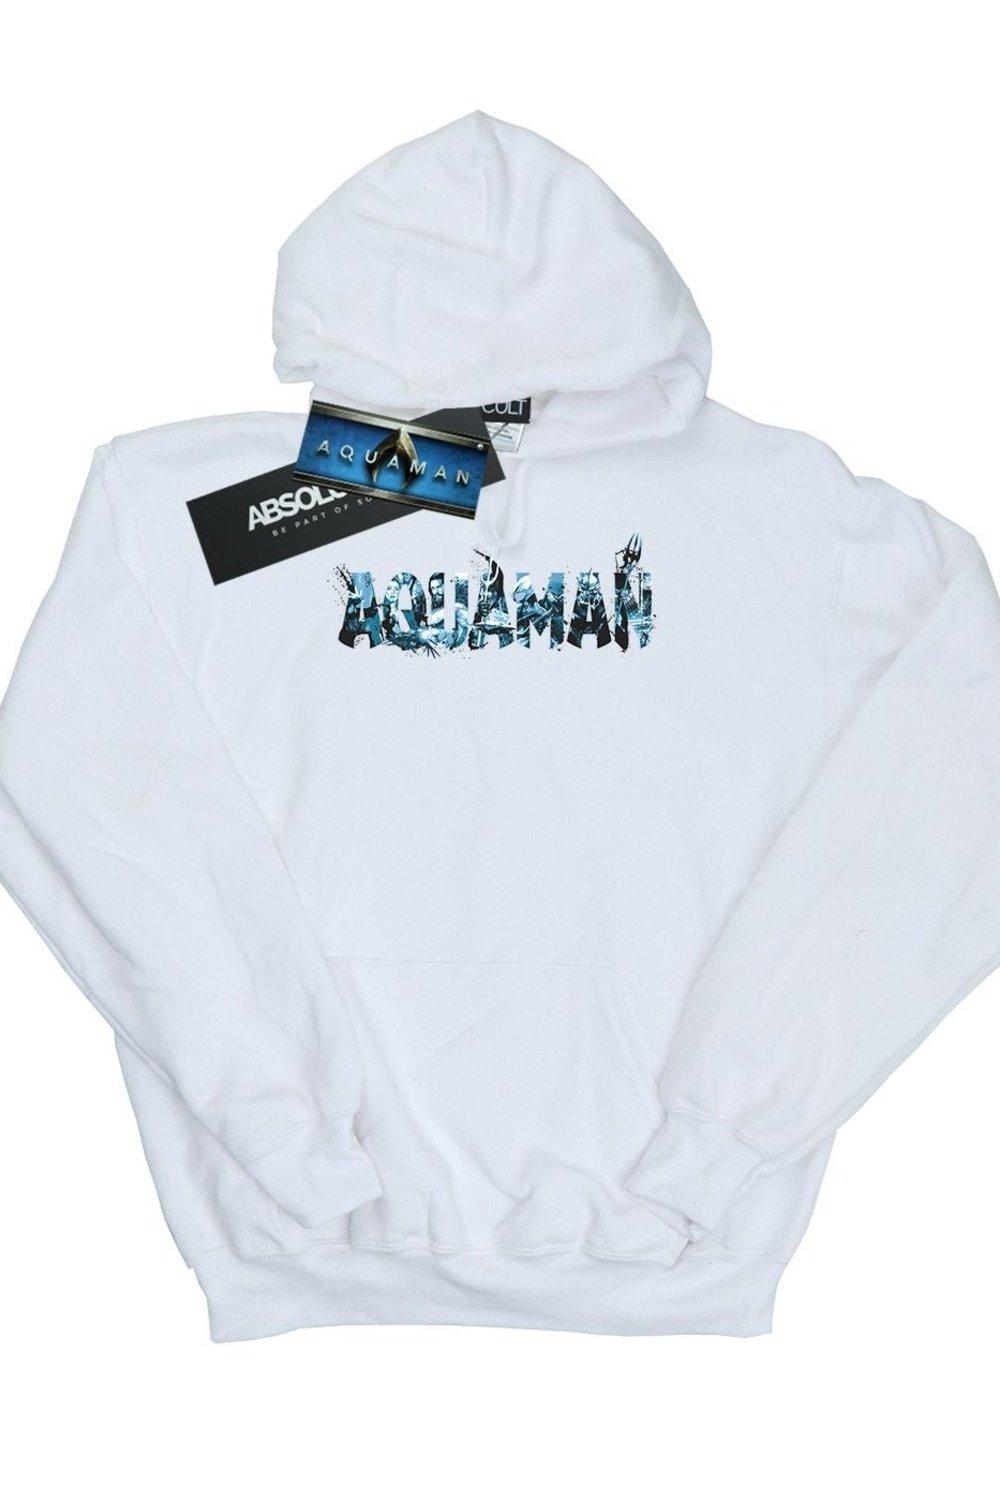 Толстовка с текстовым логотипом Aquaman DC Comics, белый фигурка утка tubbz dc comics – aquaman 9 см